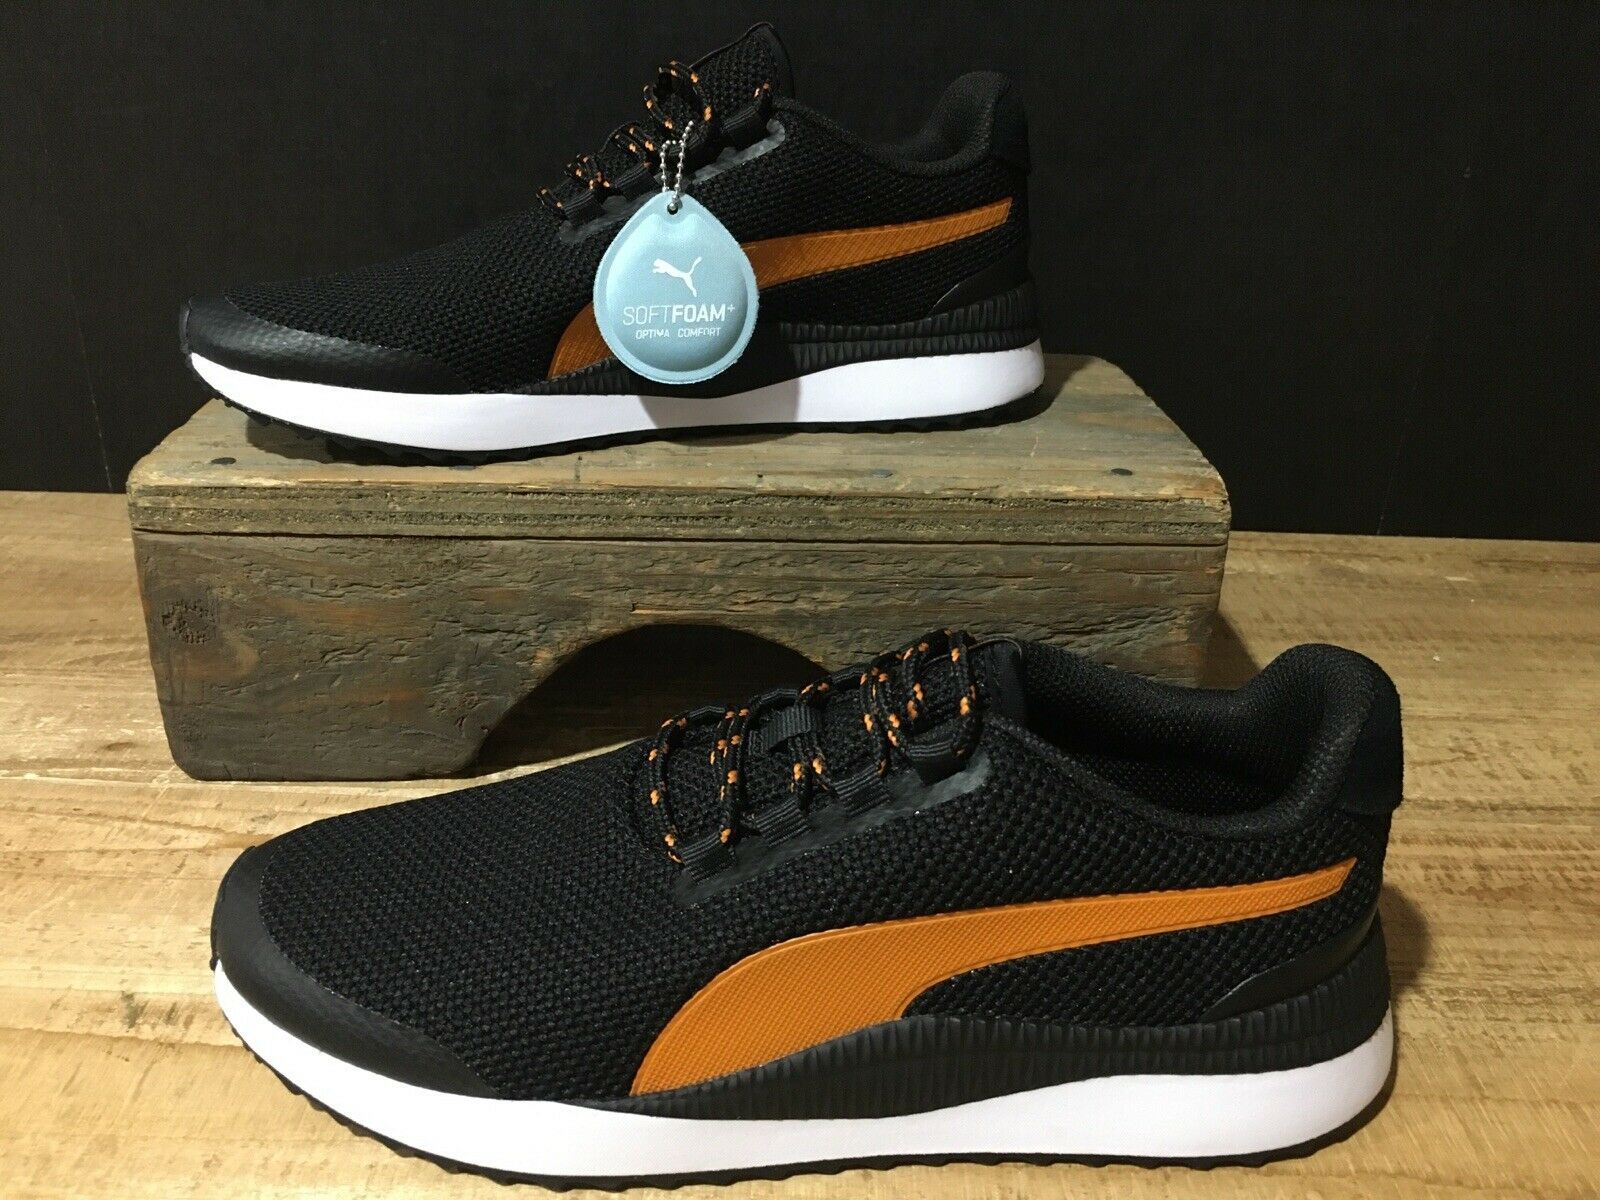 Puma pacer next fs knit 2.0 m 370507 01 black shoes Men’s Size 8 - Athletic